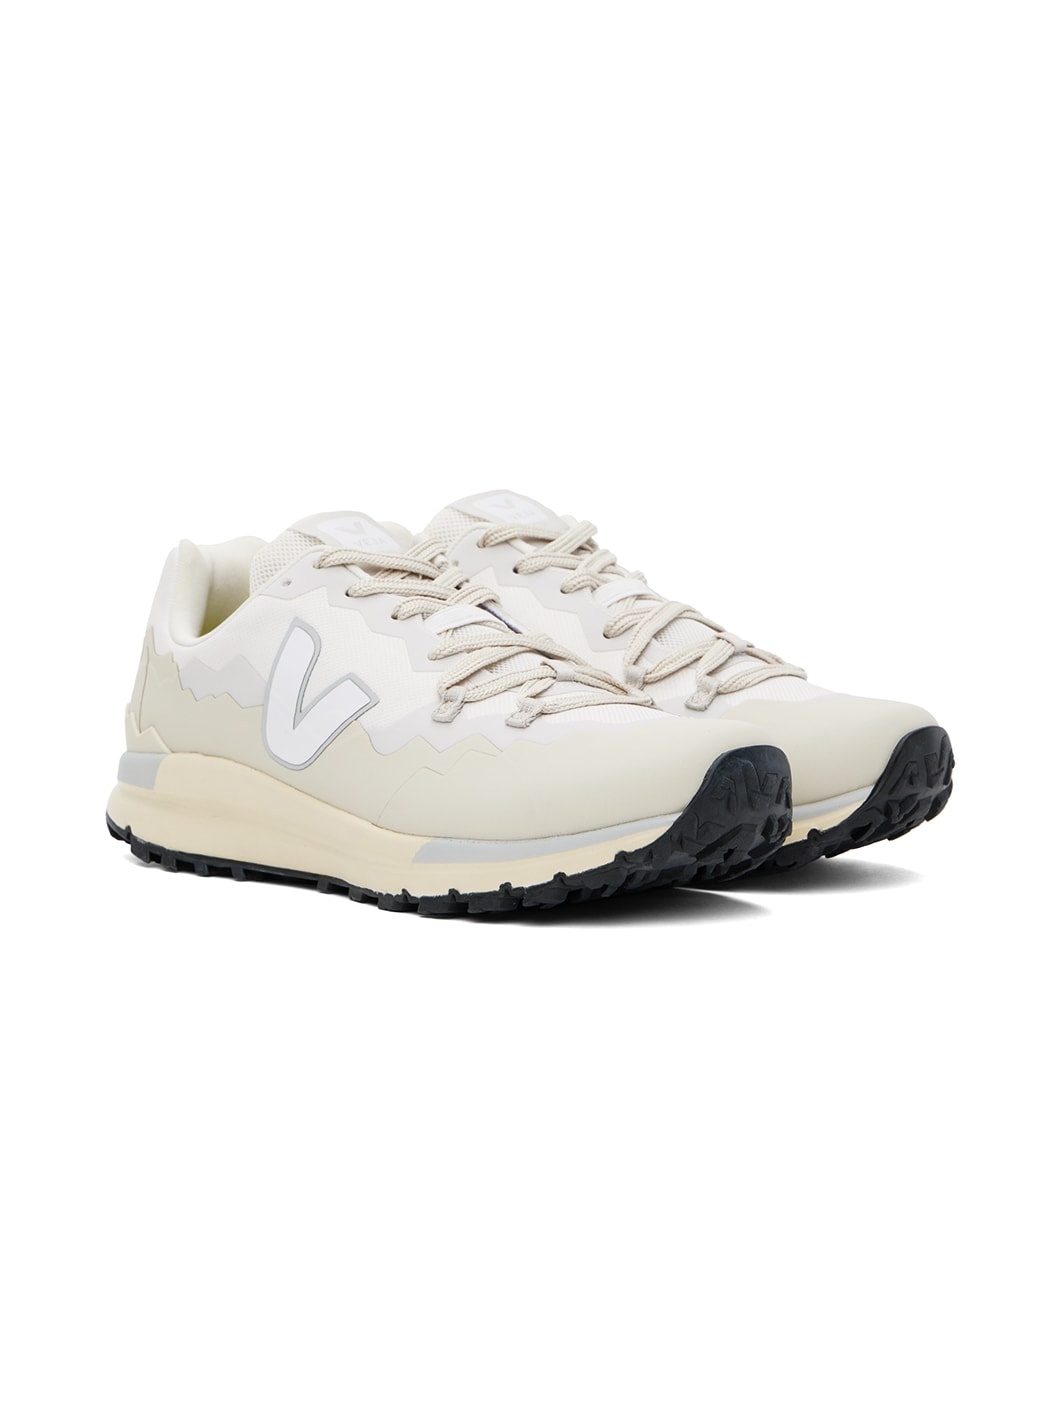 White & Beige Fitz Roy Trek-Shell Sneakers - 4